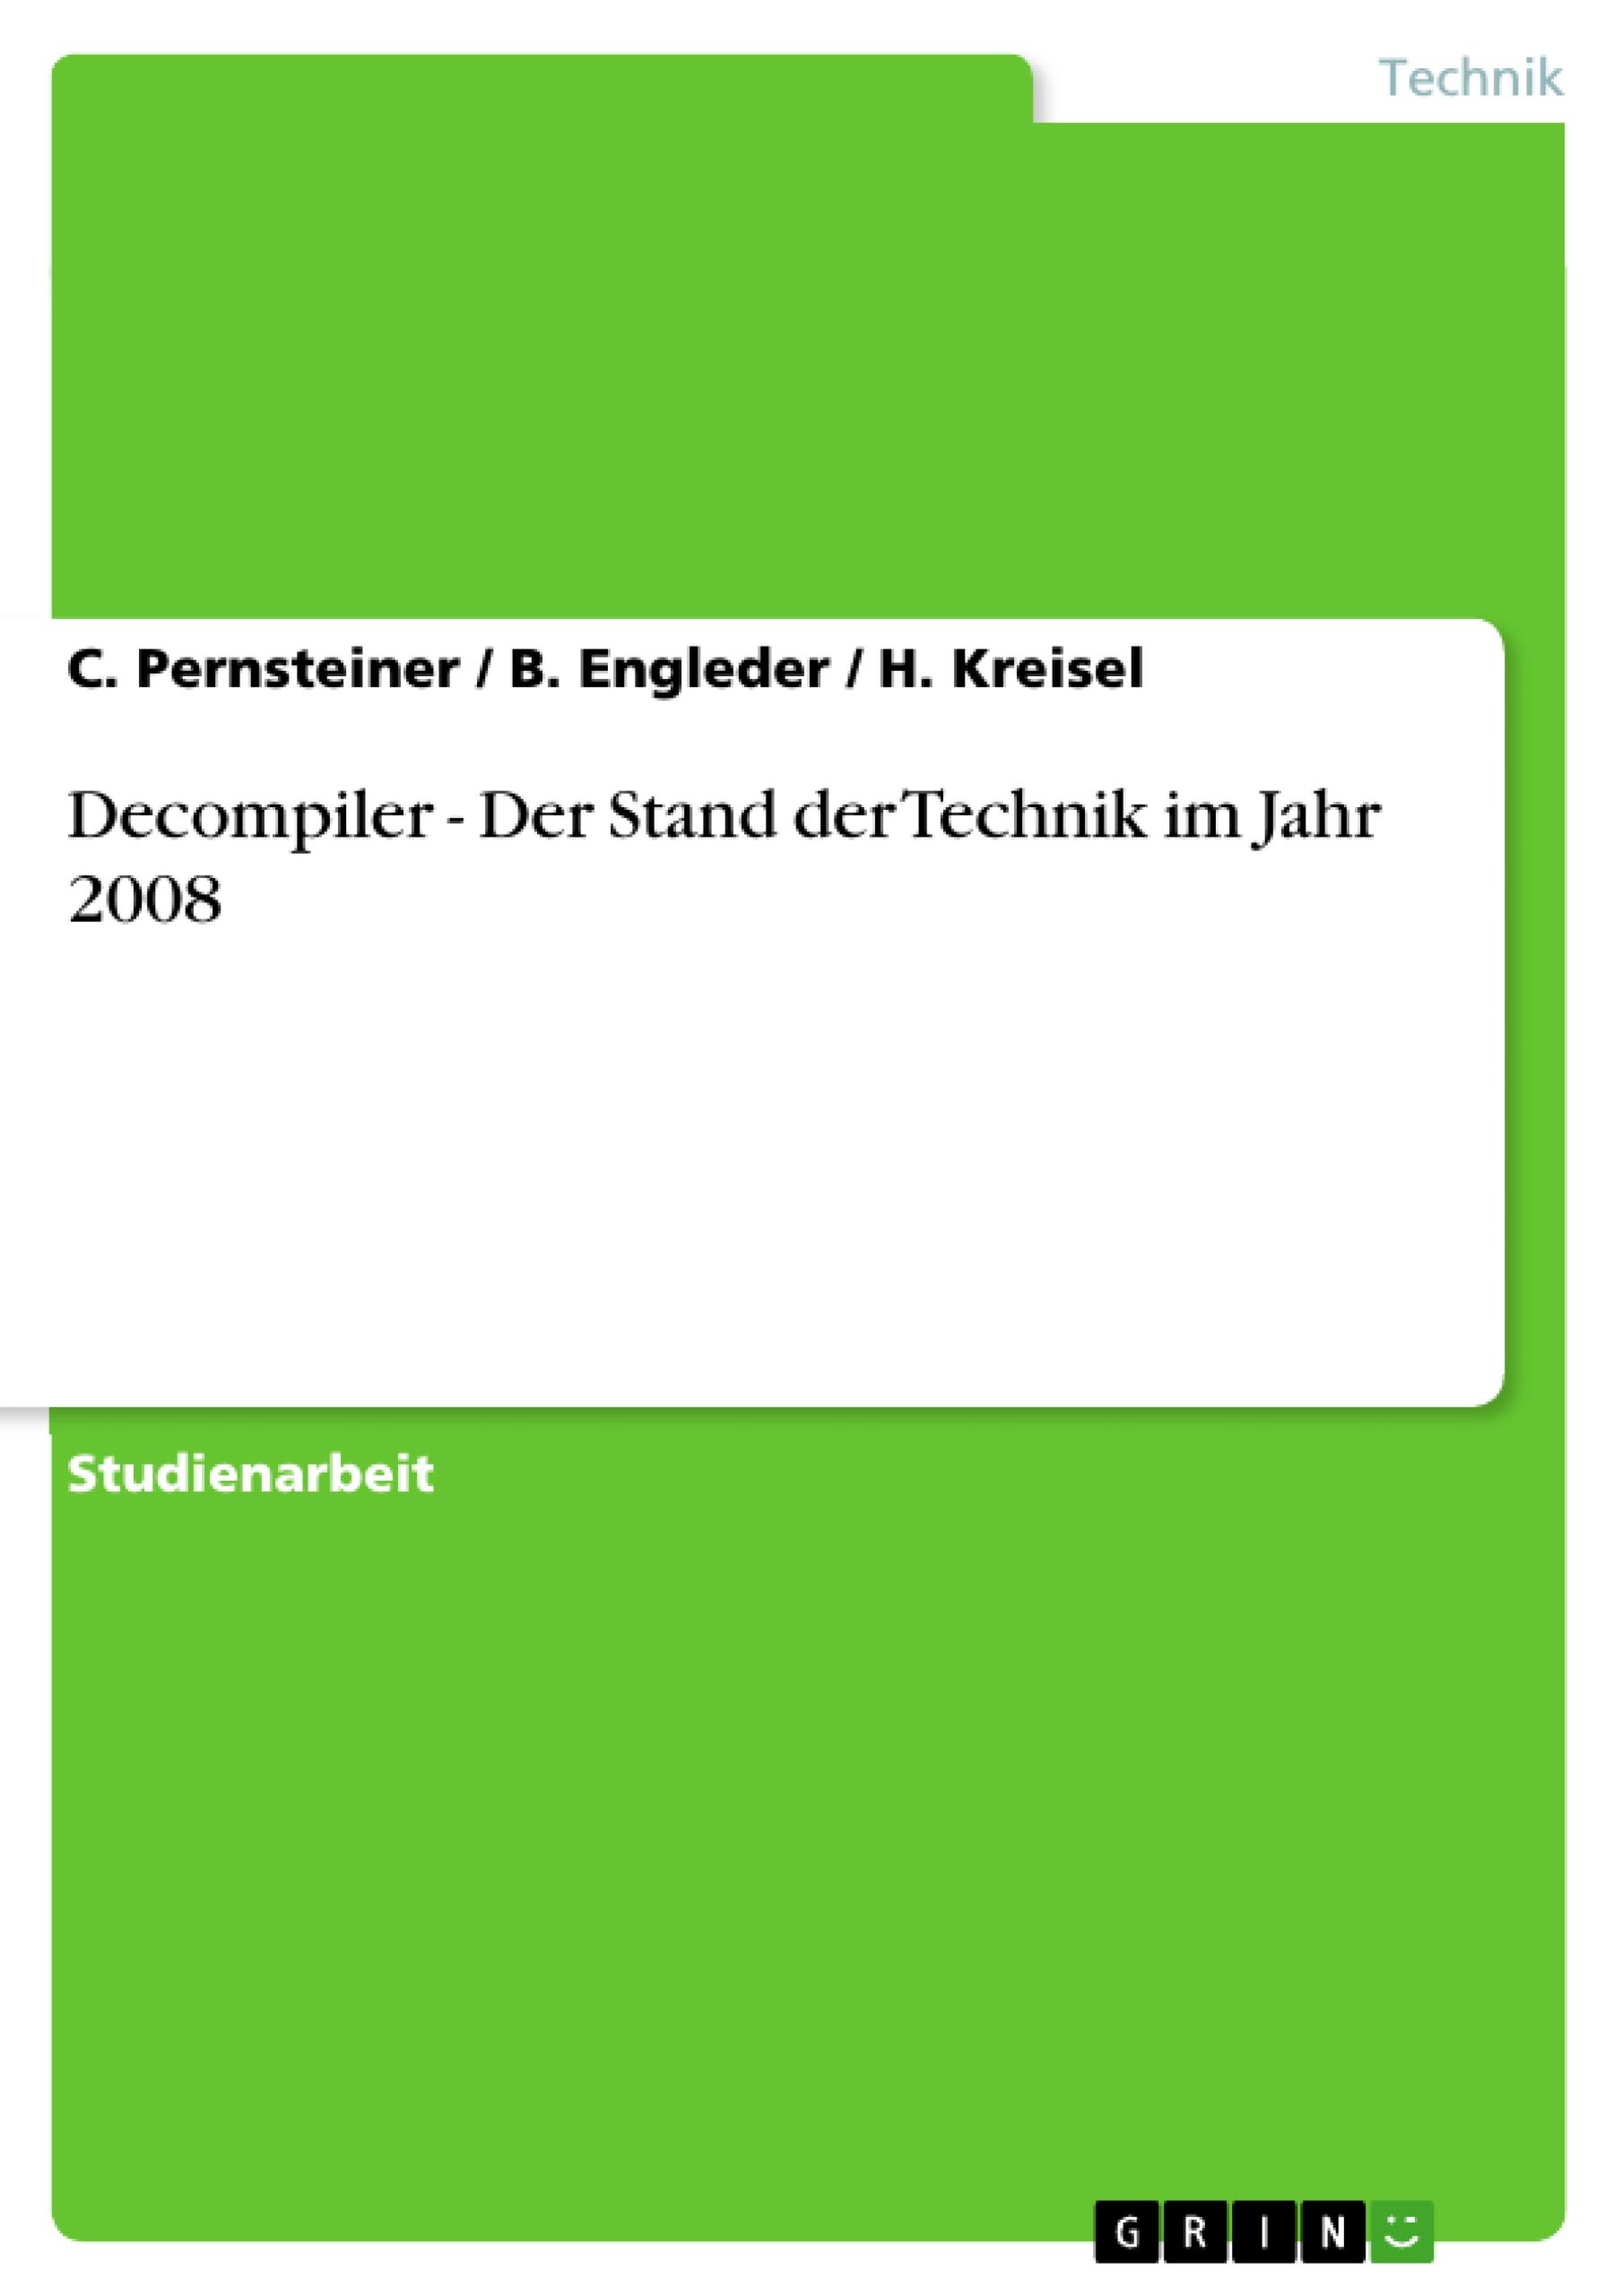 Decompiler - Der Stand der Technik im Jahr 2008 - Pernsteiner, C. Kreisel, H. Engleder, B.